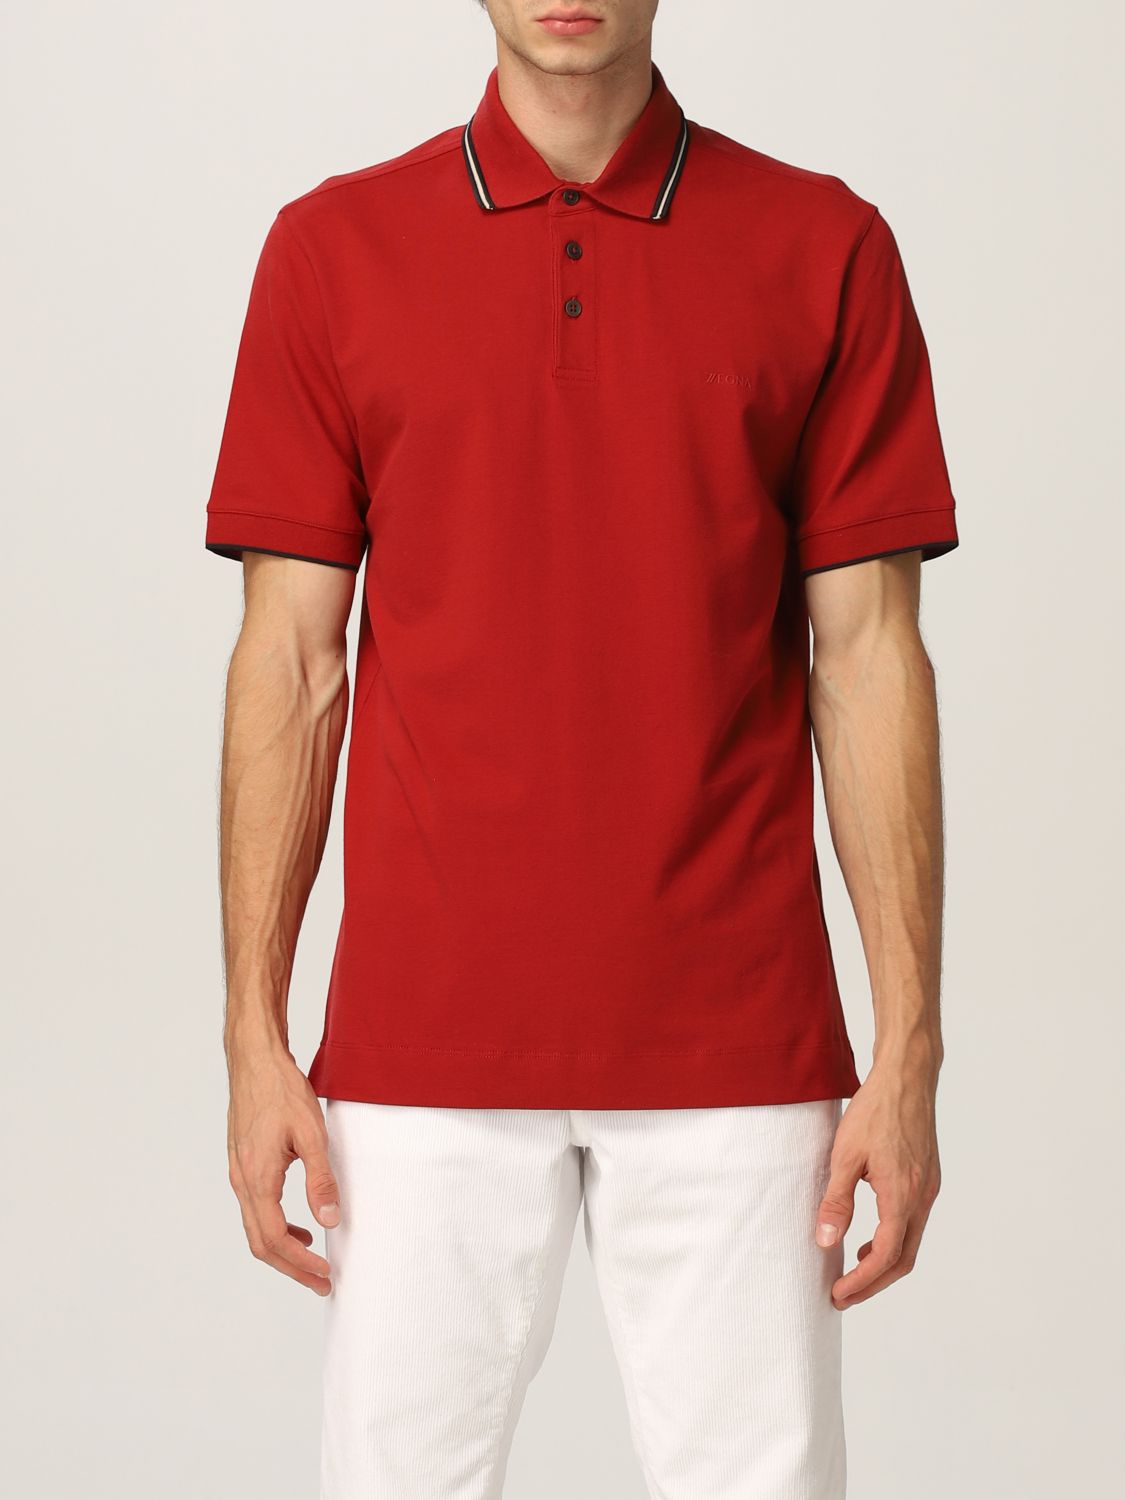 Polo Ermenegildo in cotone piquet Giglio.com Uomo Abbigliamento Top e t-shirt T-shirt Polo 